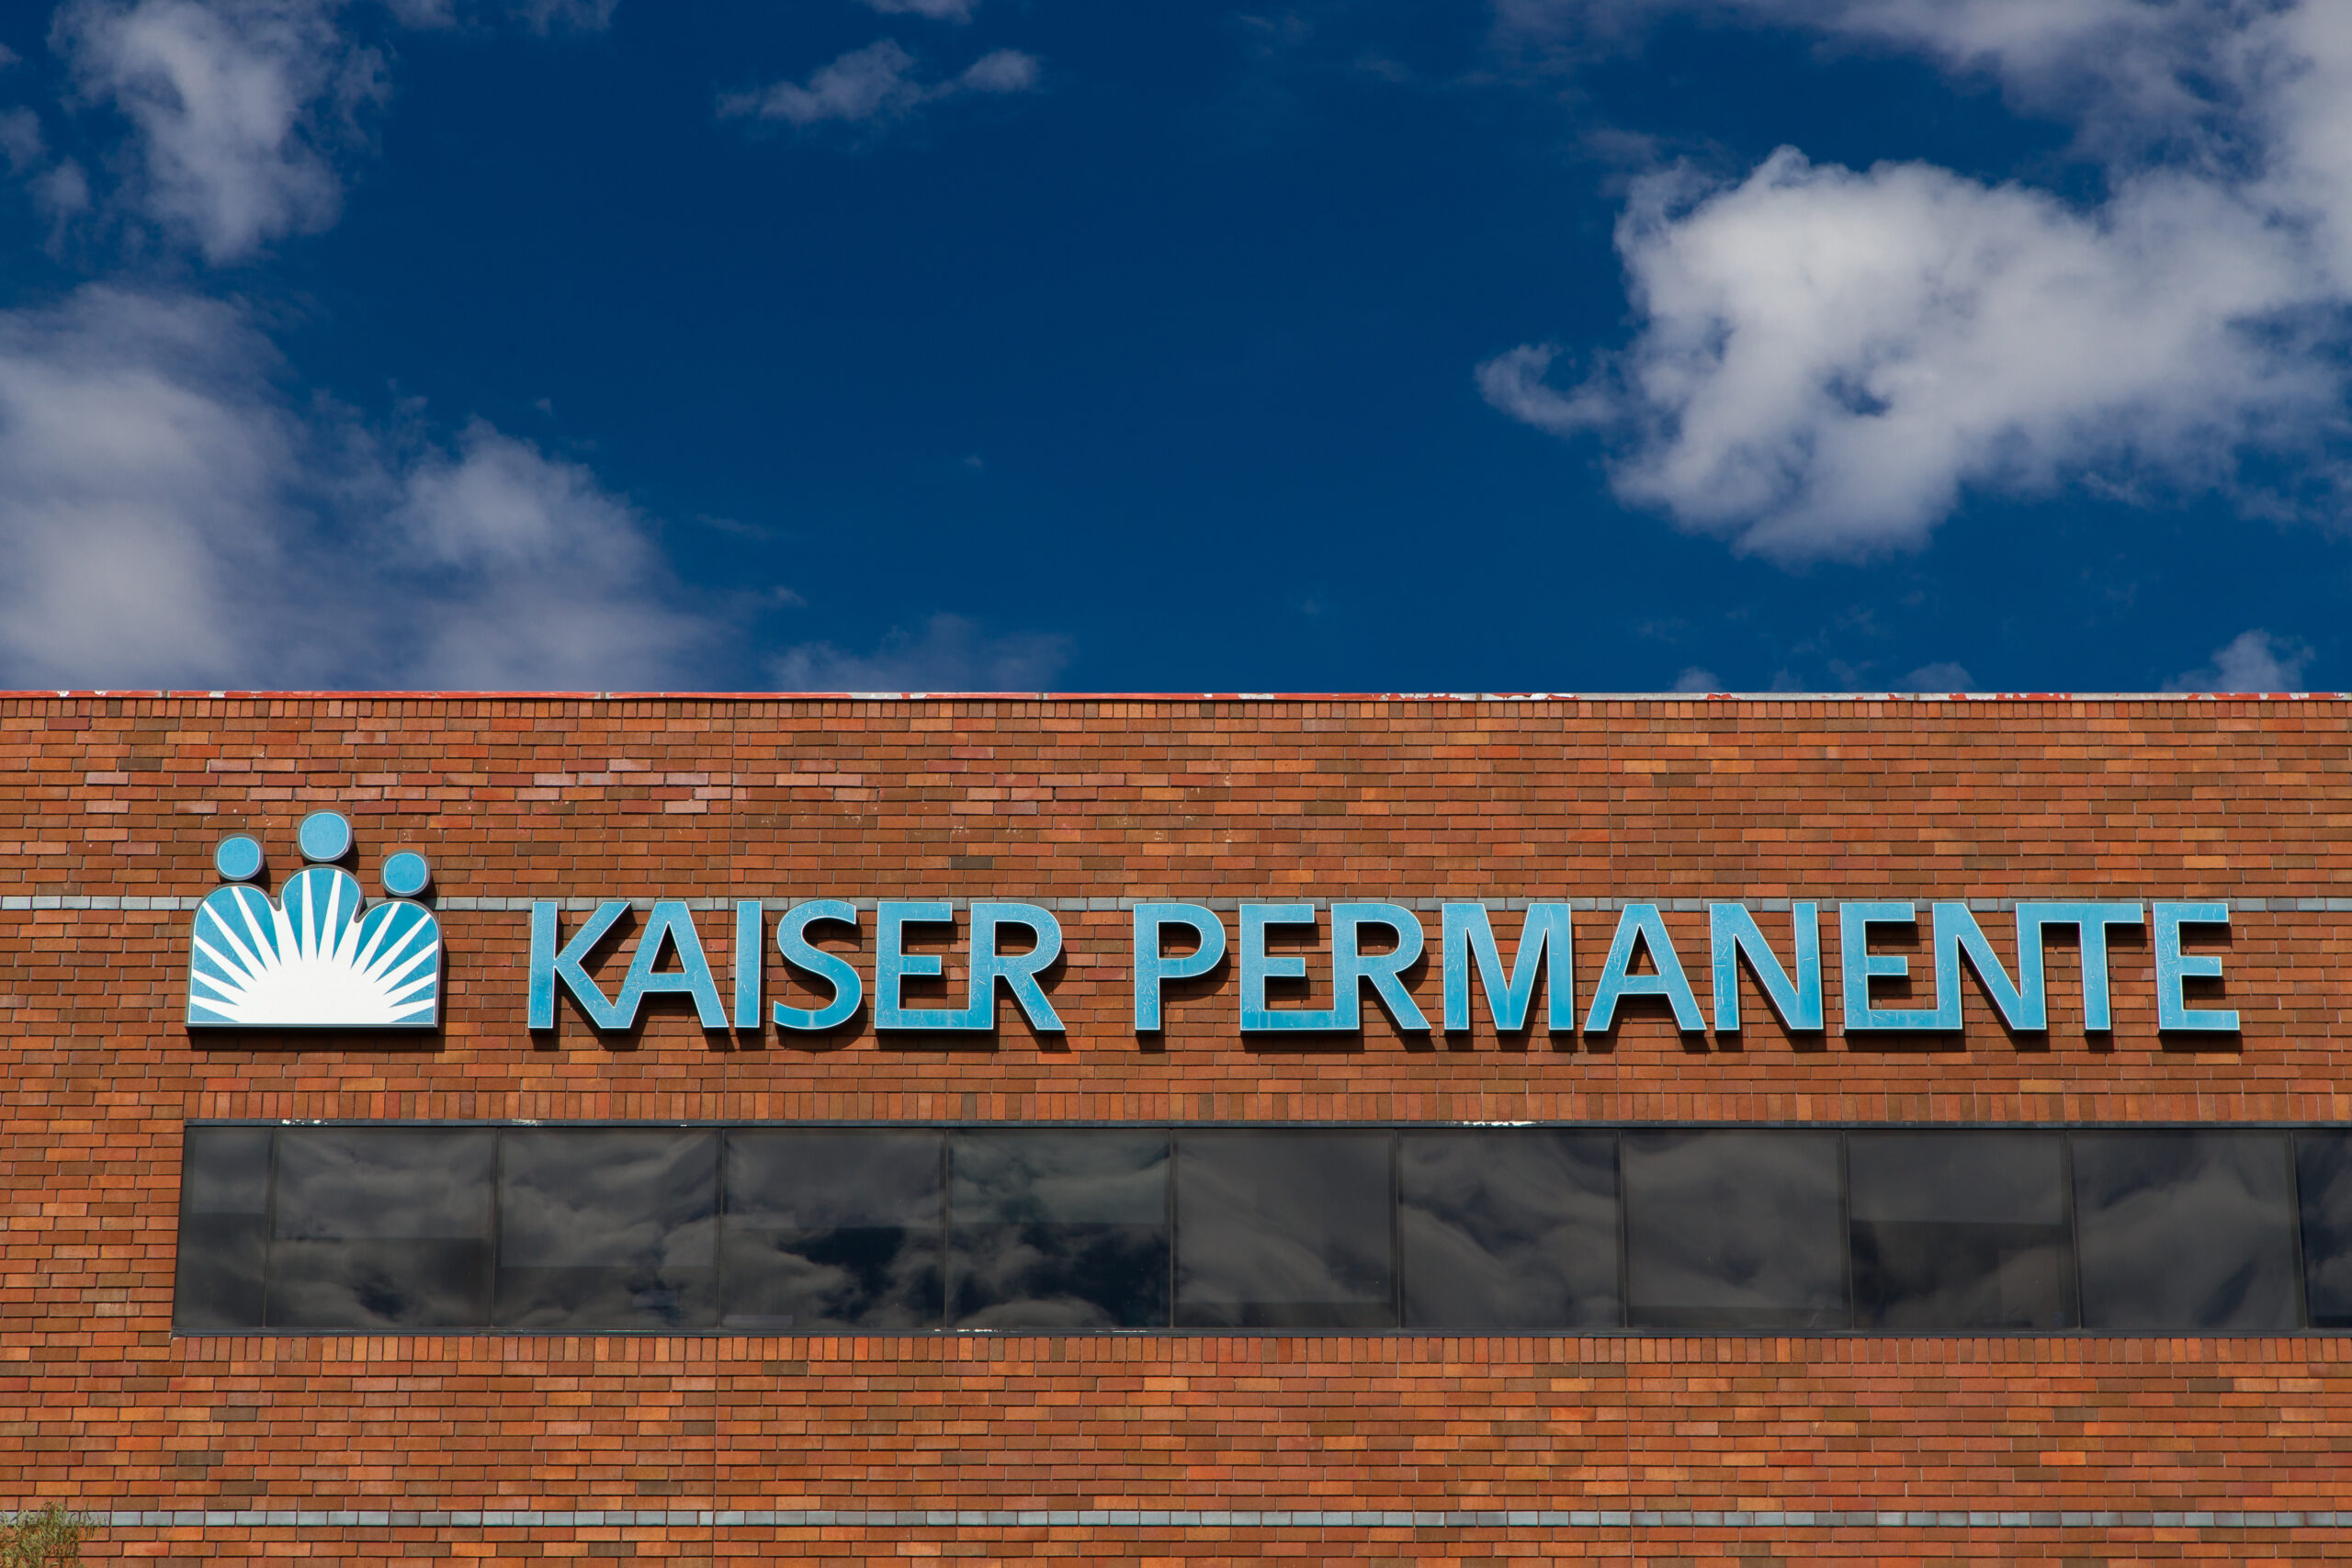 kaiser-permanente-s-acquisition-of-geisinger-penn-ldi